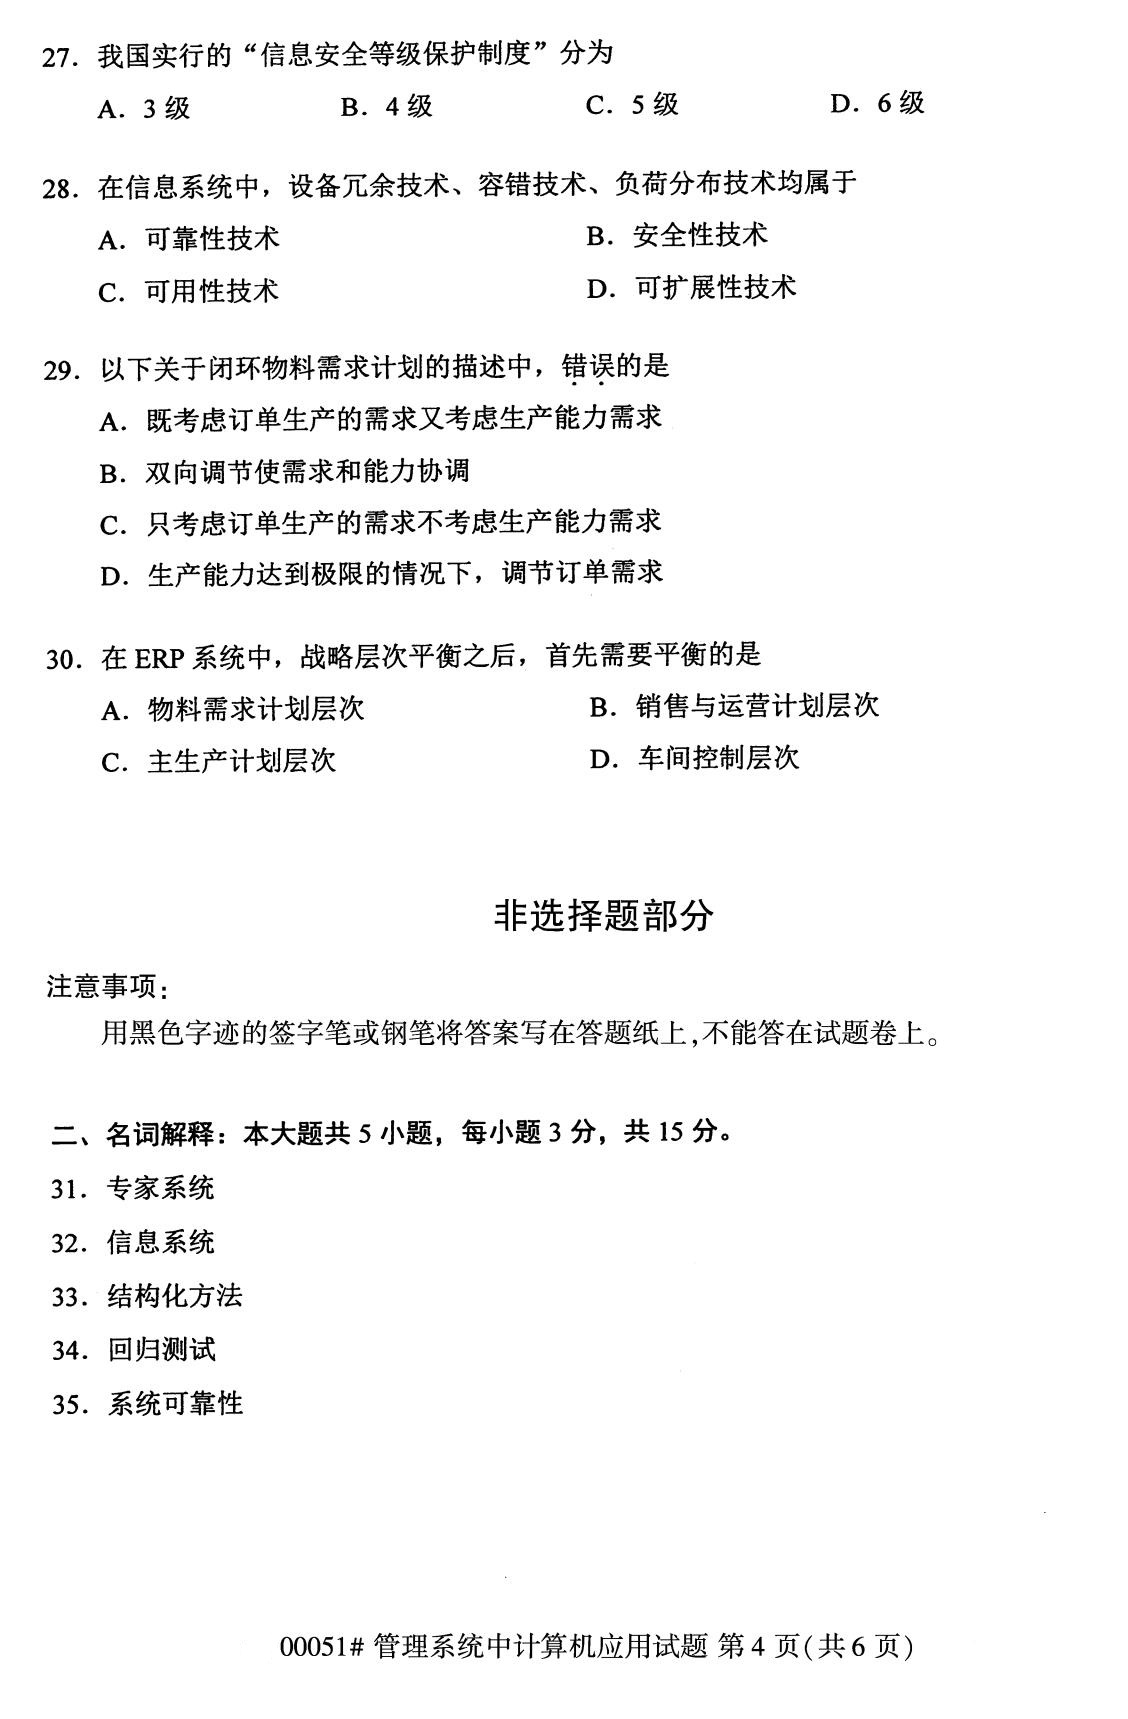 2020年8月广东省自学考试本科管理系统中计算机应用真题(图4)